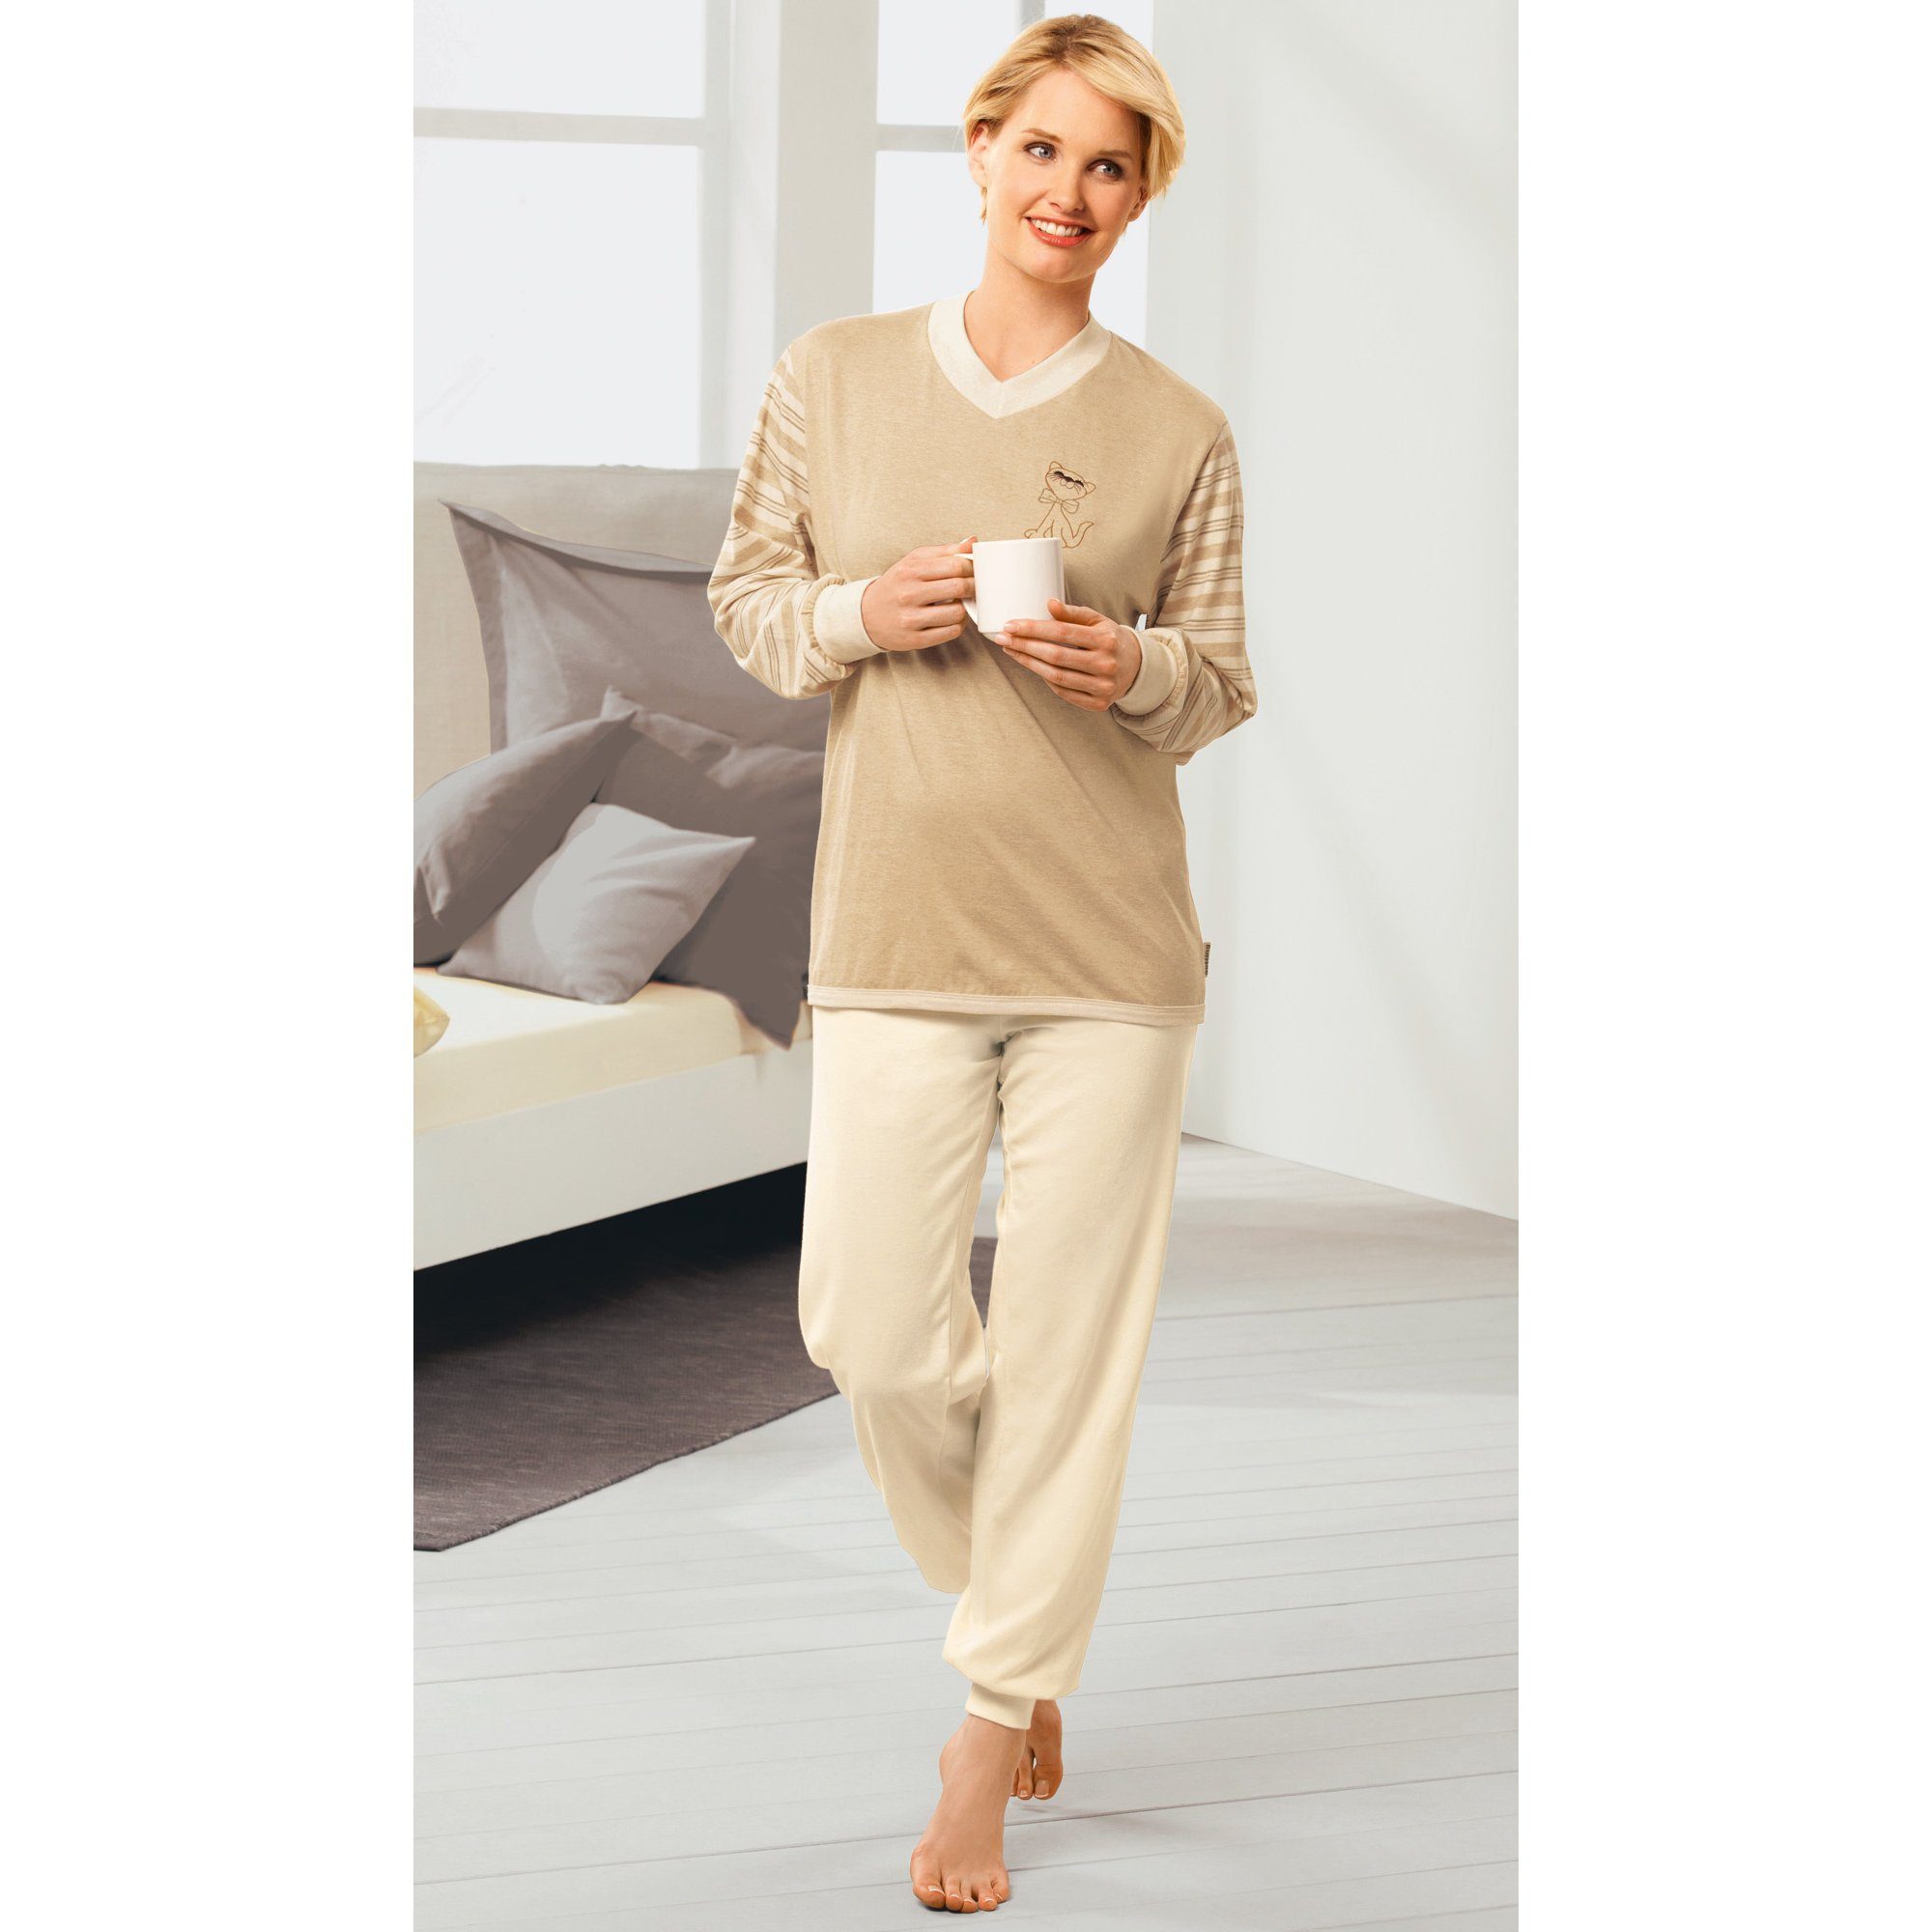 Damen-Schlafanzug Streifen Single-Jersey naturbelassen götting Pyjama